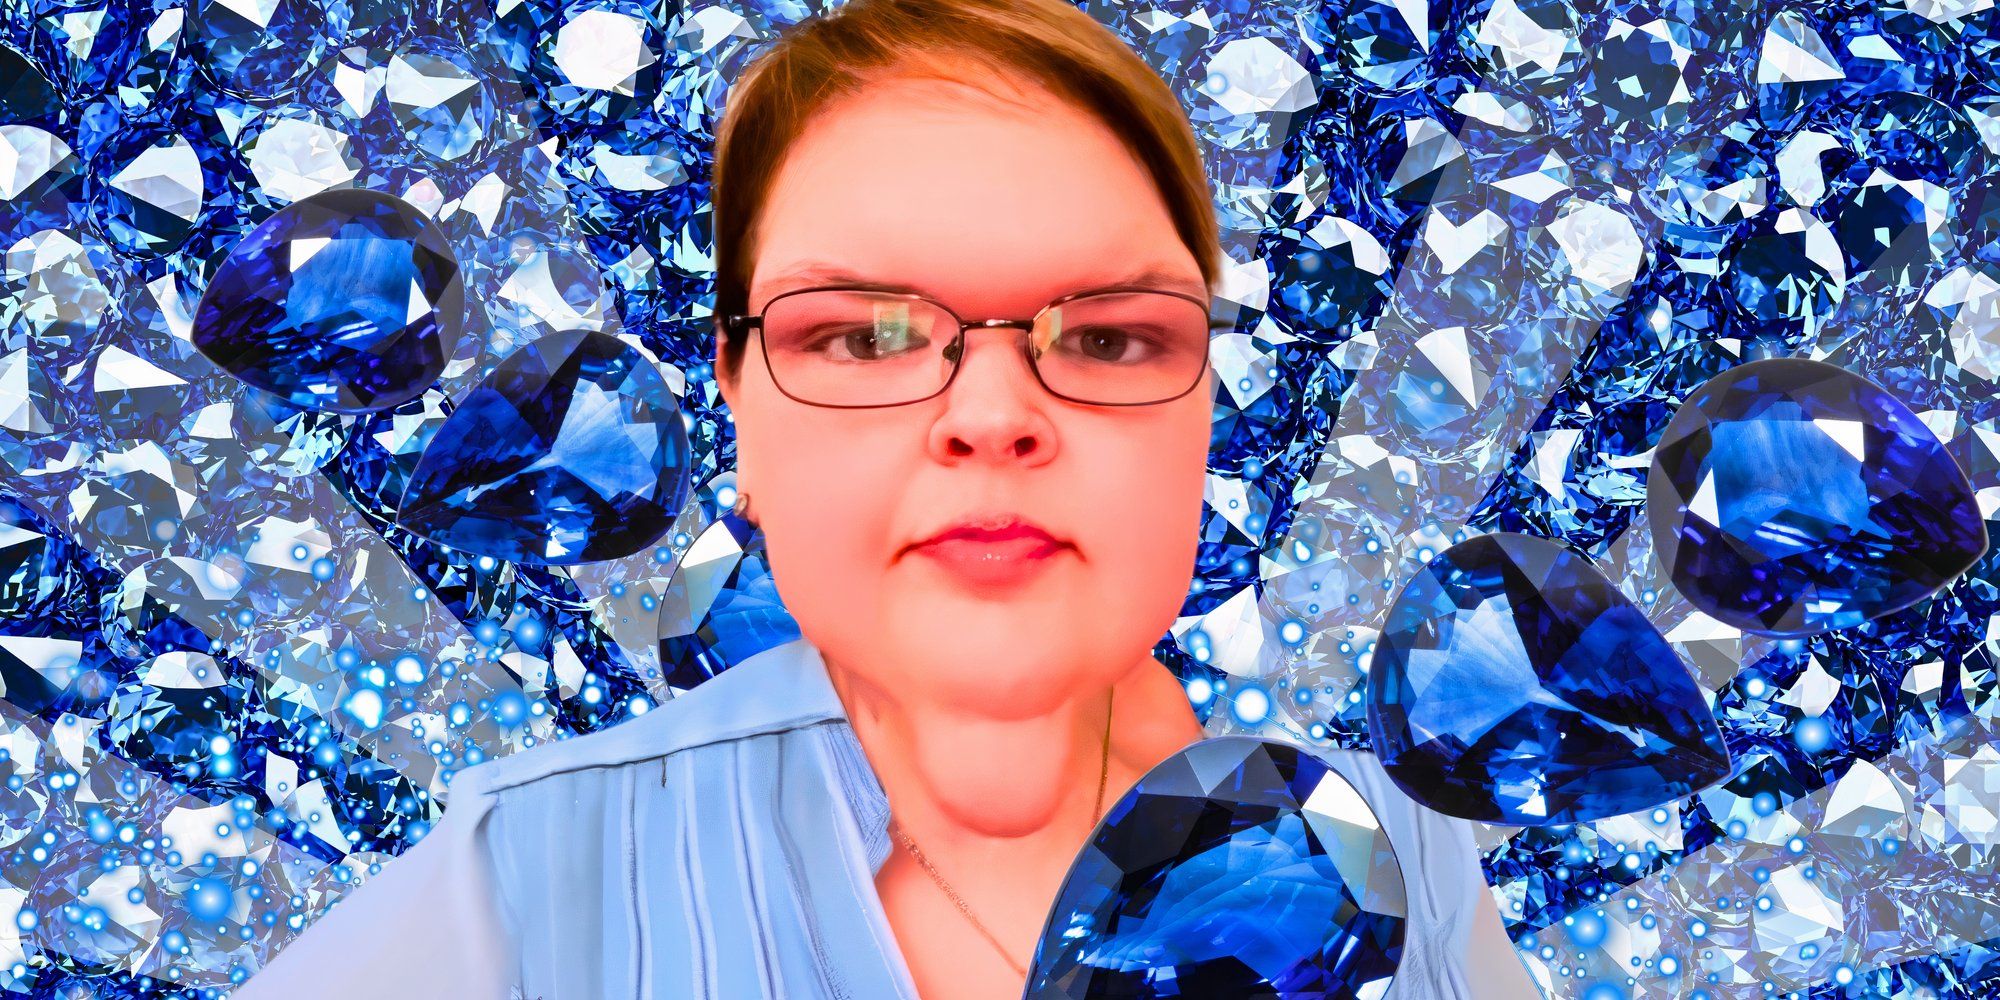 Hermanas de 1000 libras: "¡Zafiro estrella!": Más atuendos azules de ensueño de Tammy después de un hito extraordinario en su pérdida de peso